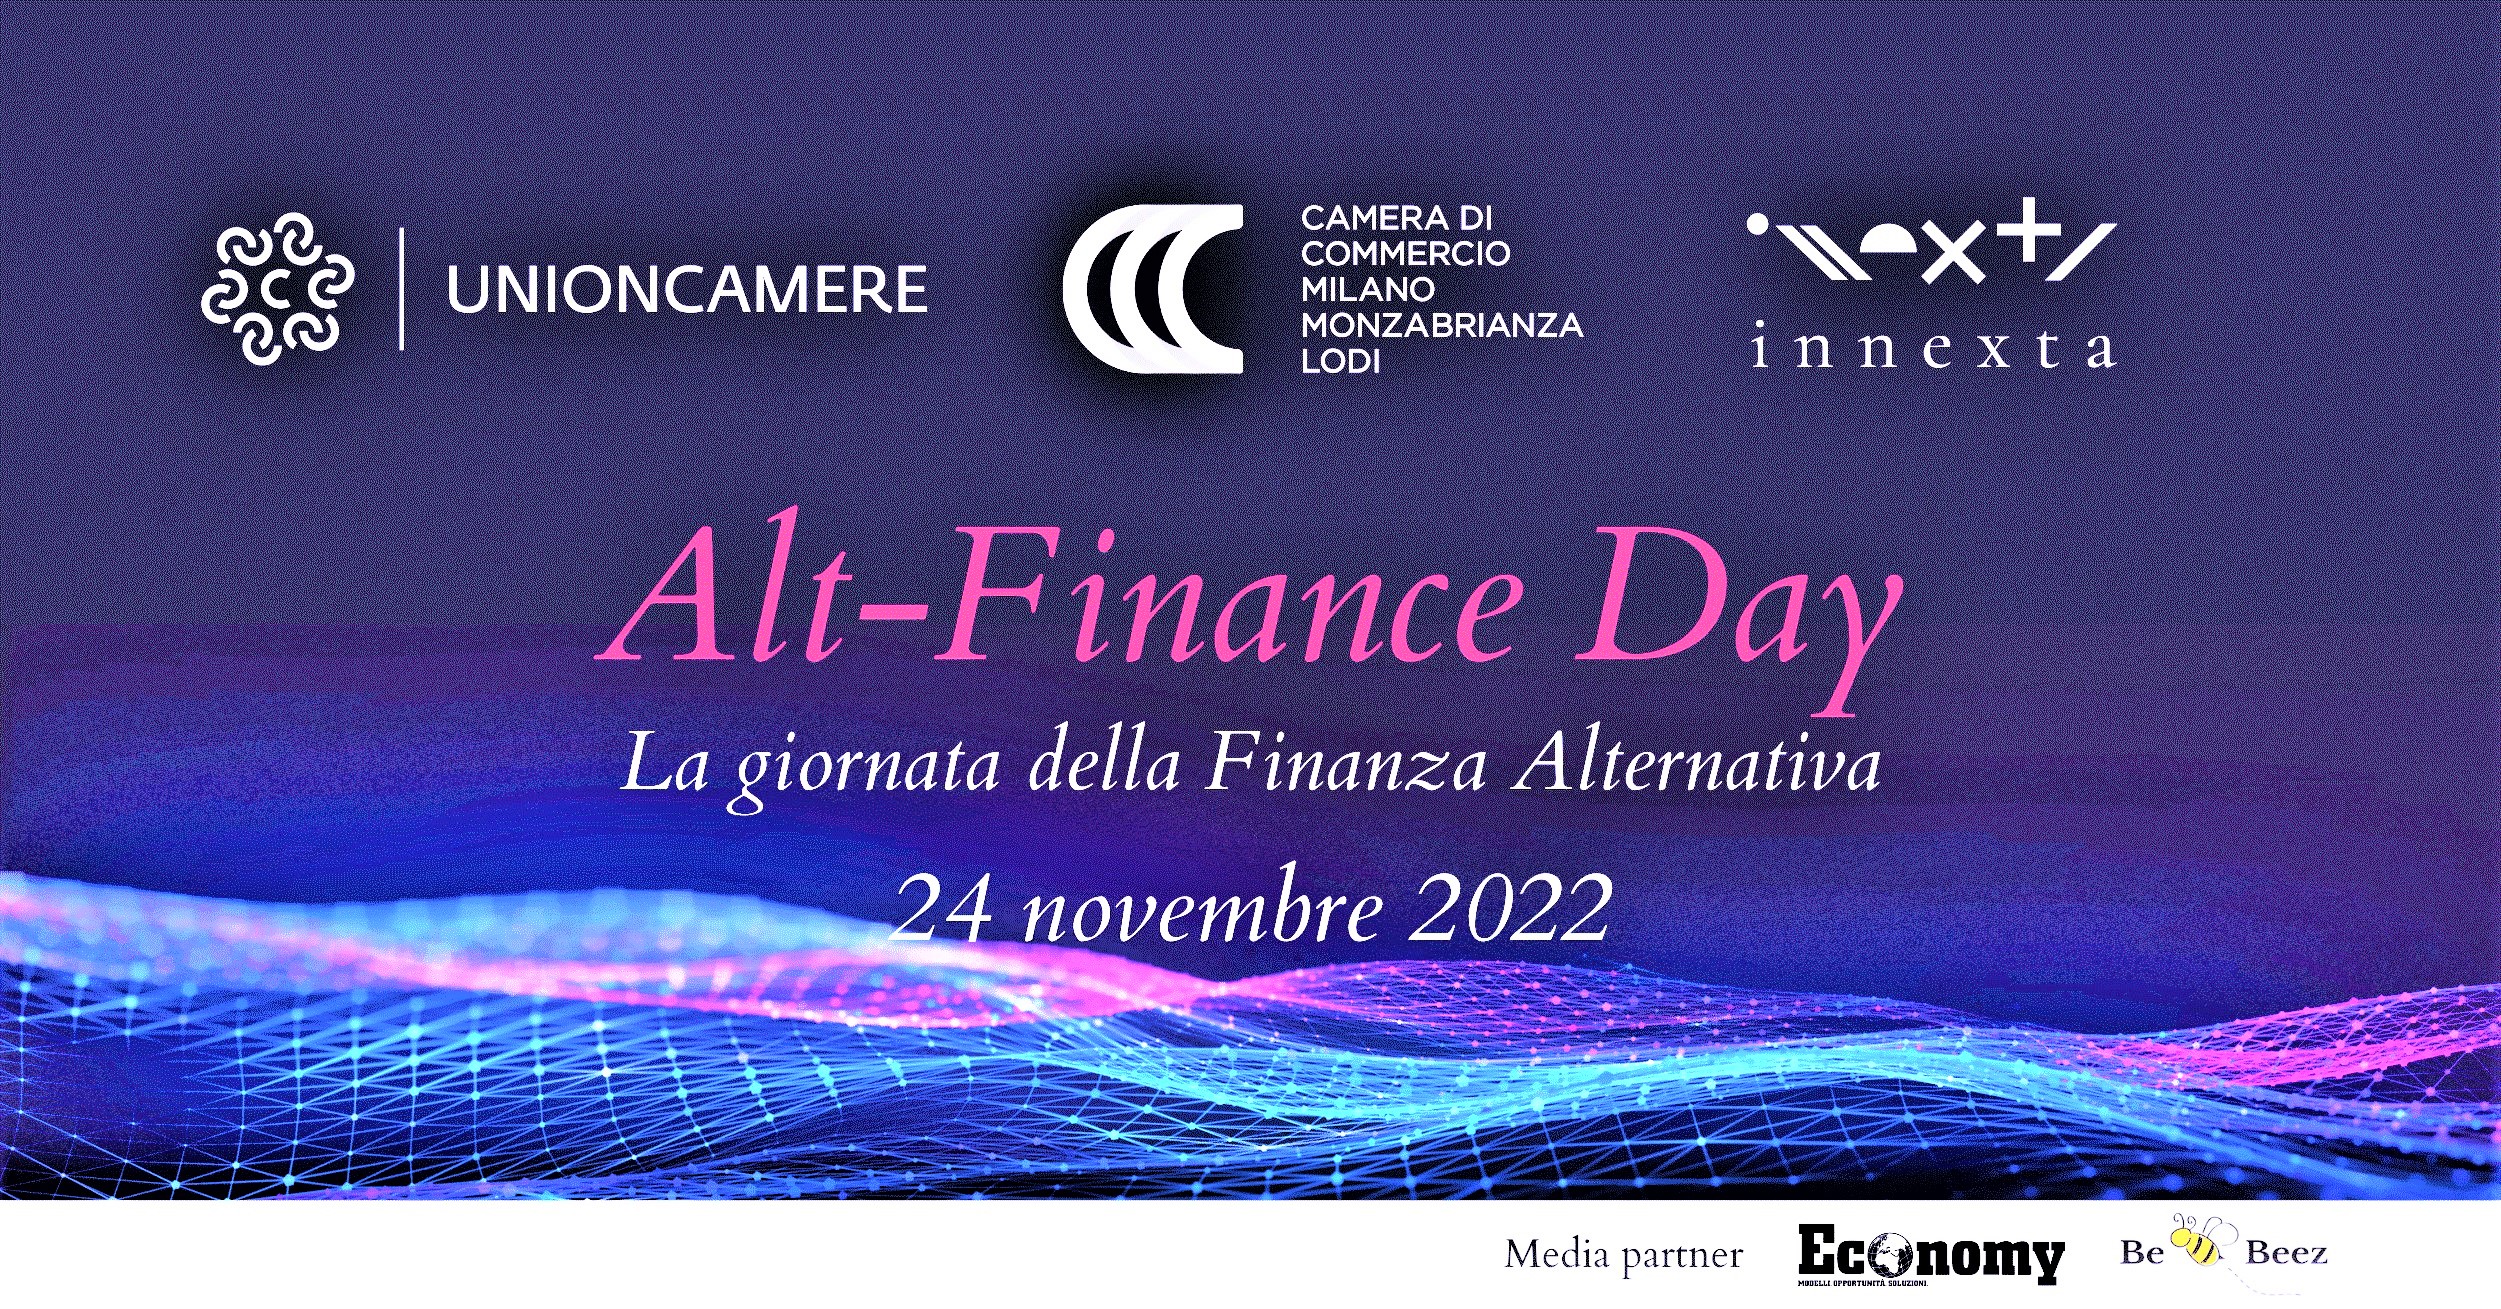 Alt-Finance Day 2022, 24 novembre 2022